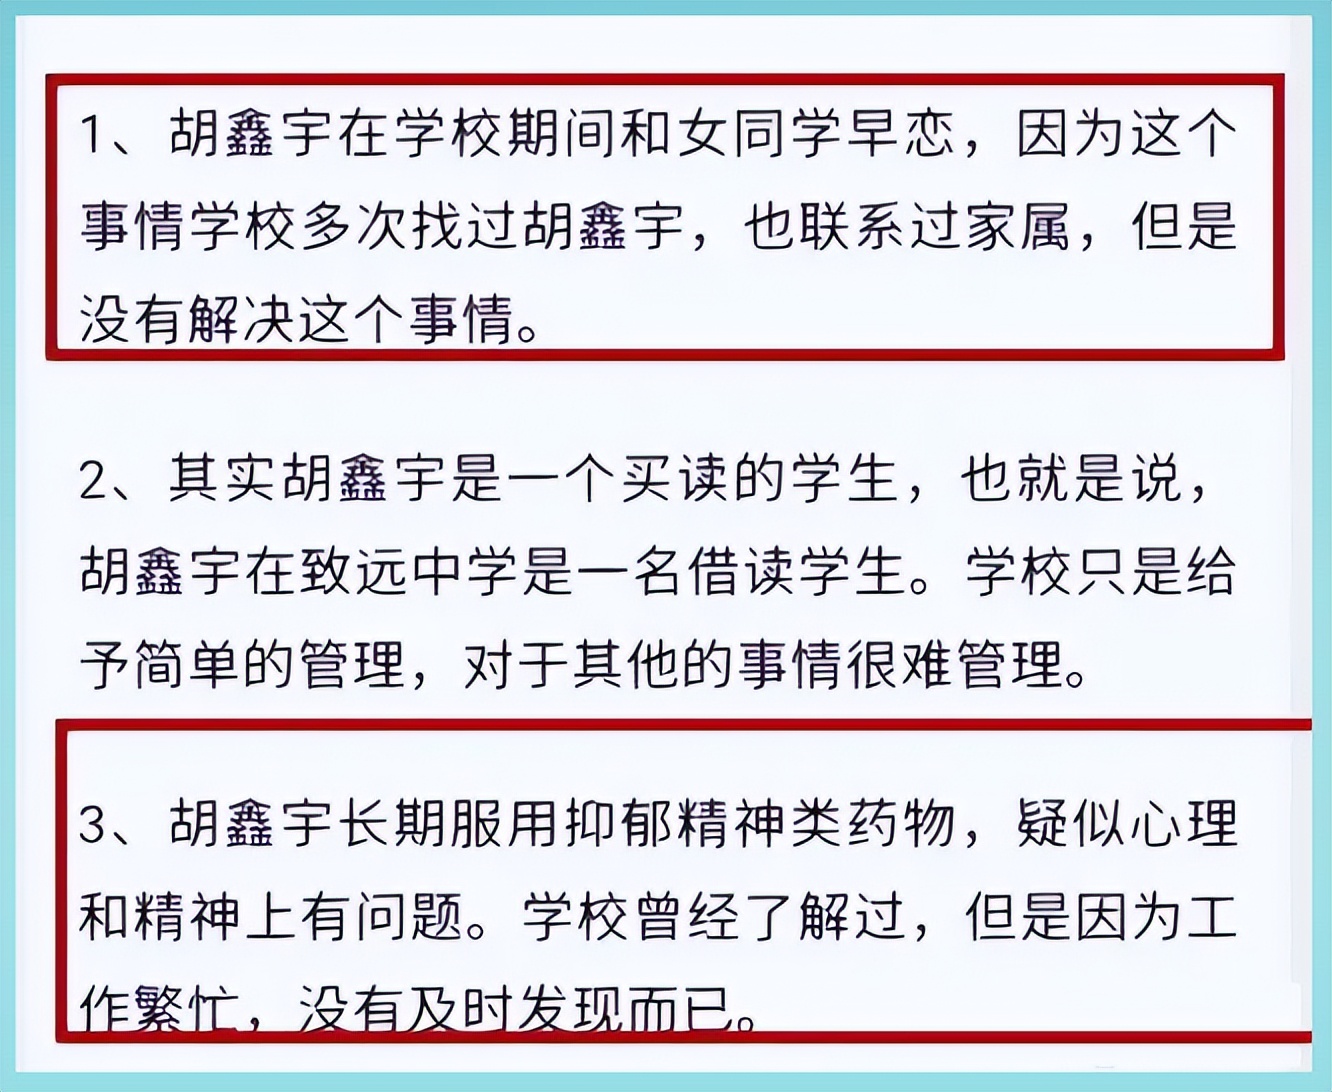 吴鑫宇 - 南京汇登电子科技有限公司 - 法定代表人/高管/股东 - 爱企查